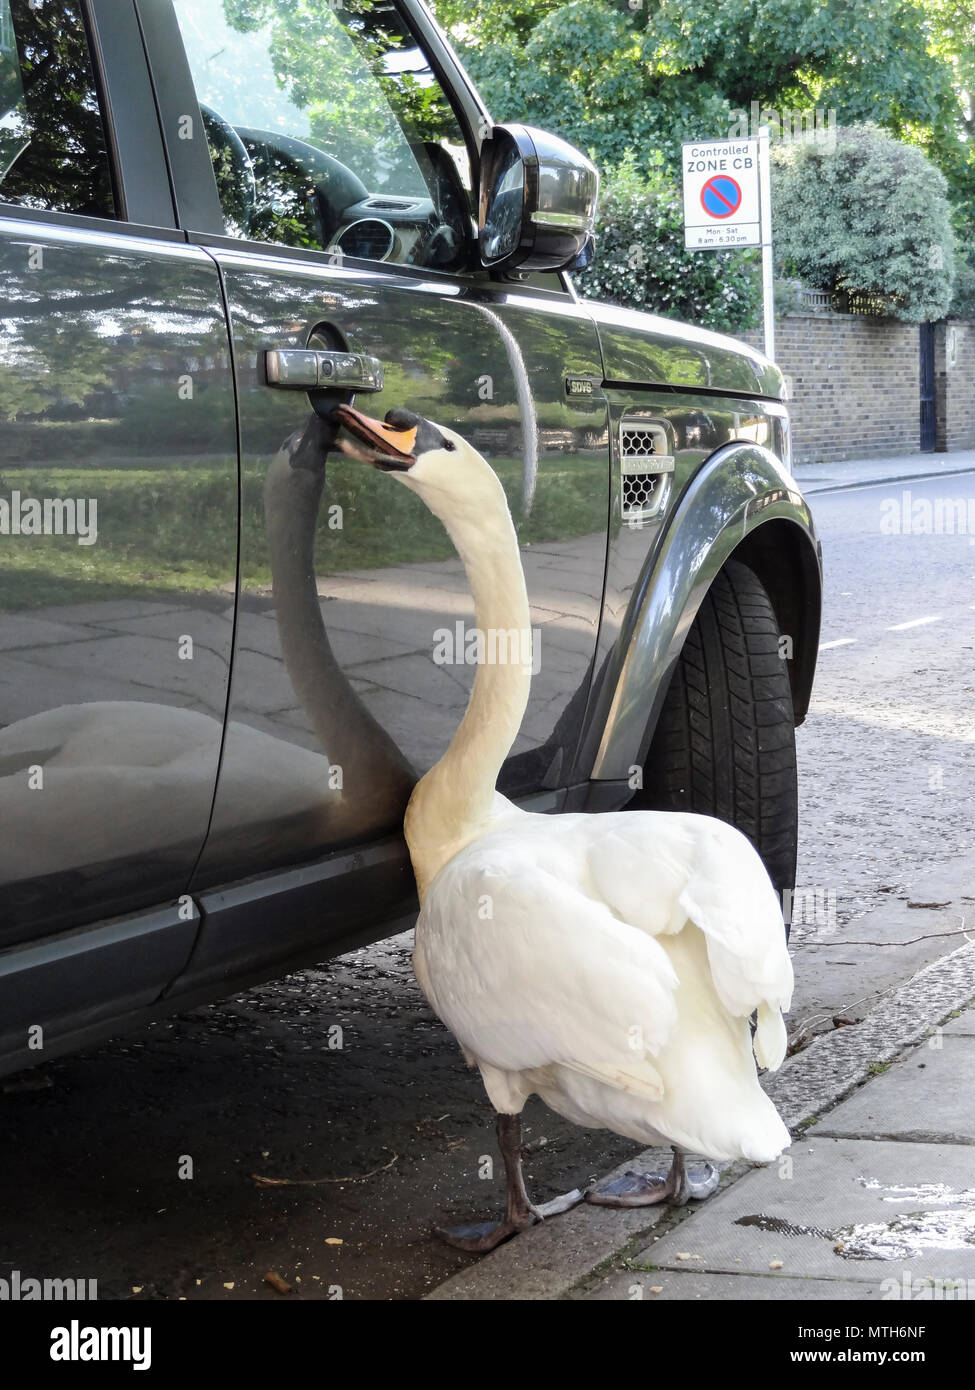 Ein neugieriger stummer Schwan, der versucht, die Eingangstür zu einem Land Rover Discovery, London, England, Großbritannien, zu öffnen Stockfoto